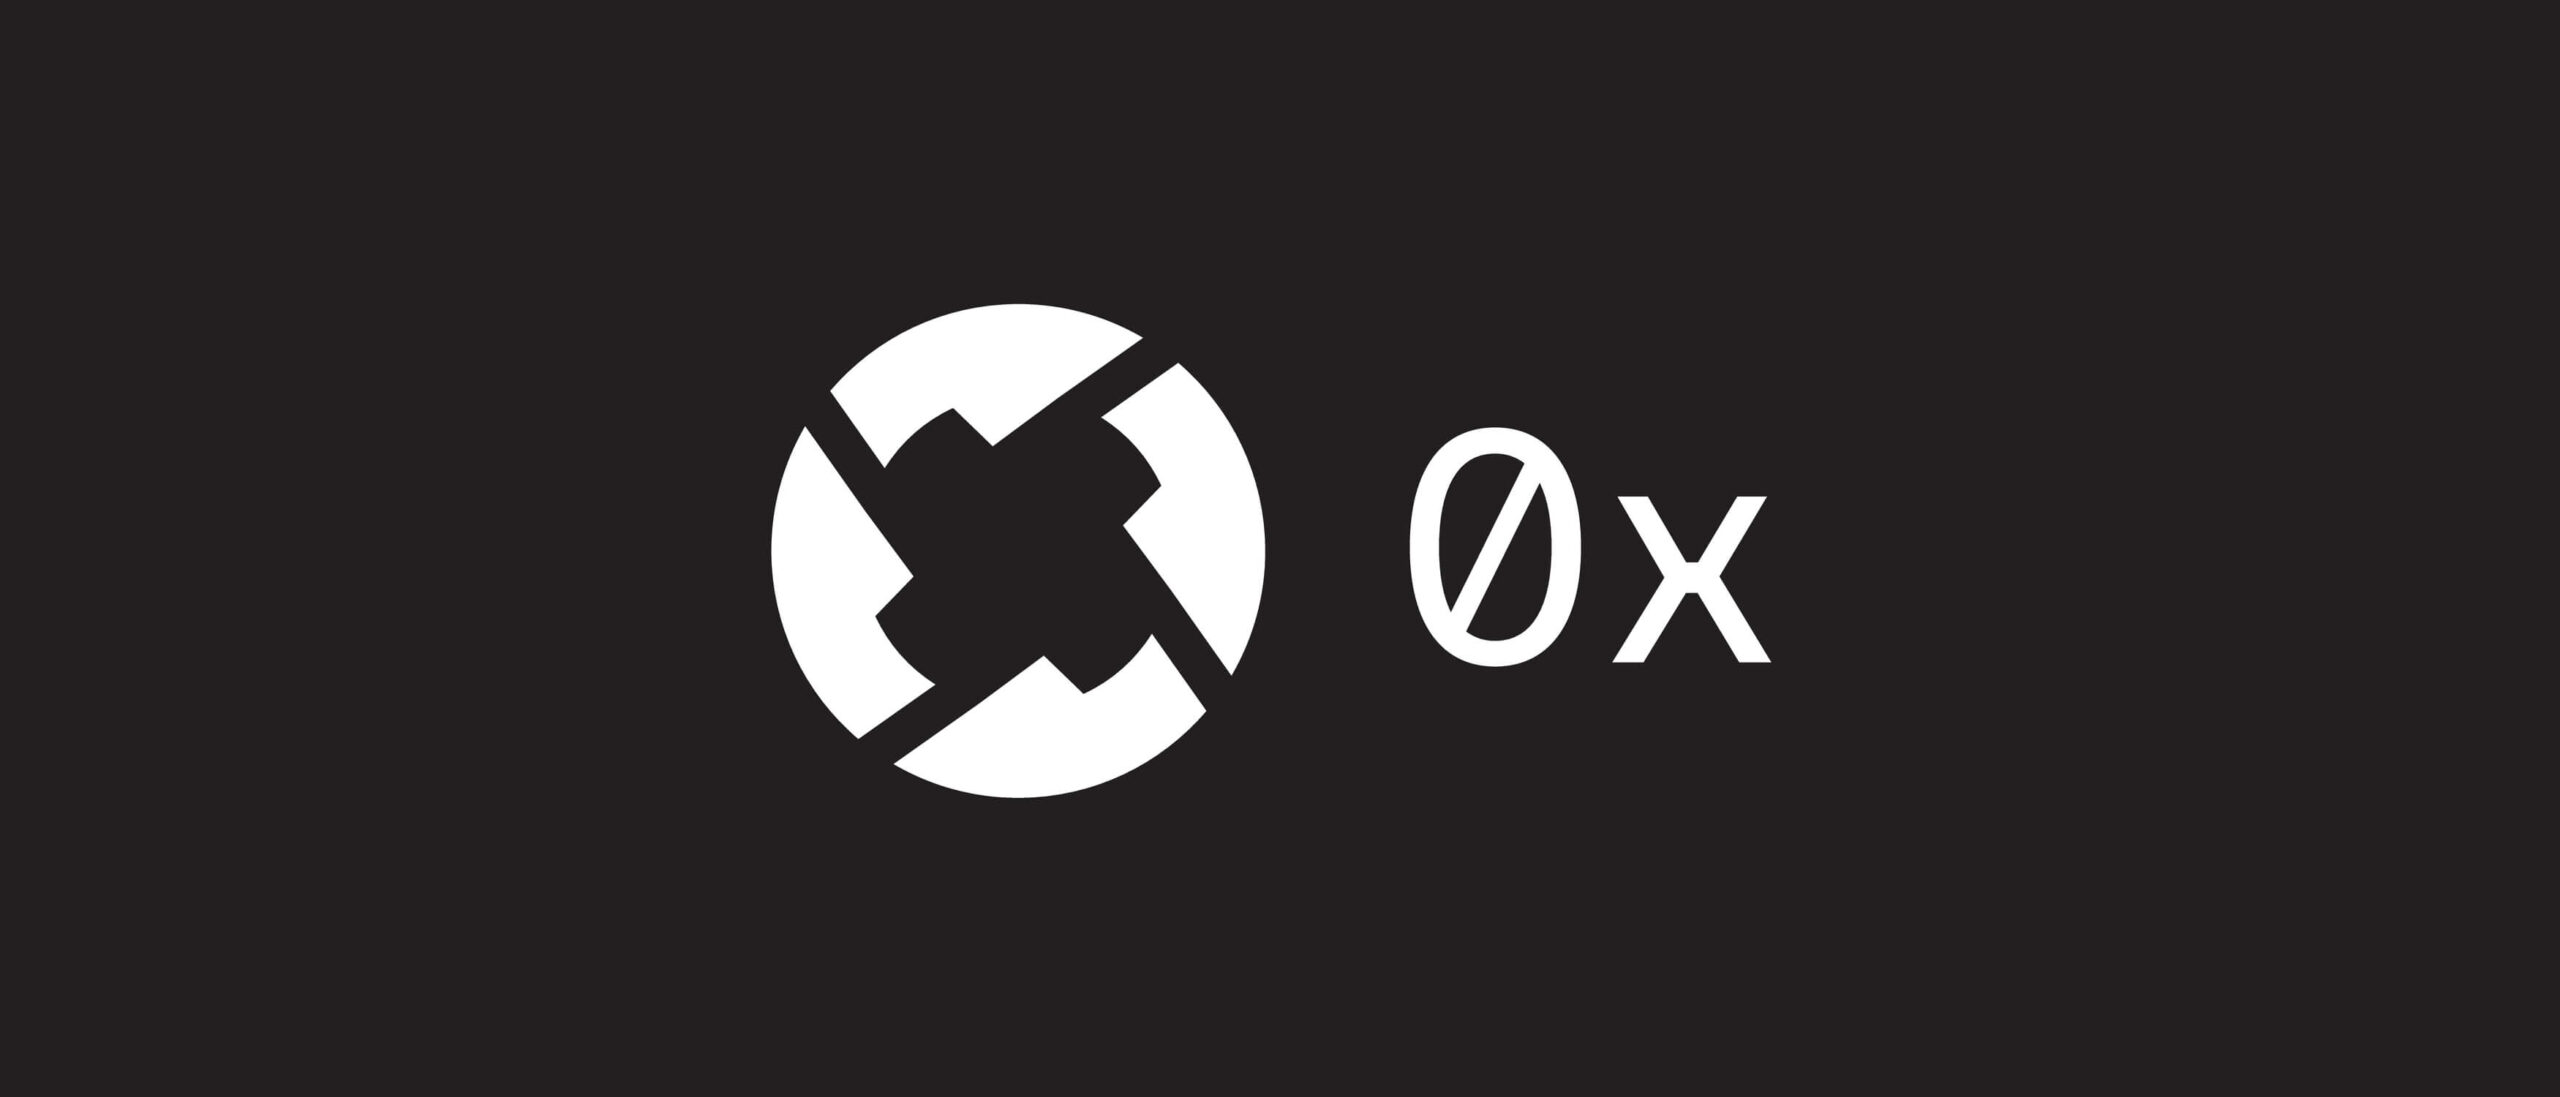 White 0x ZRX logo on black background 